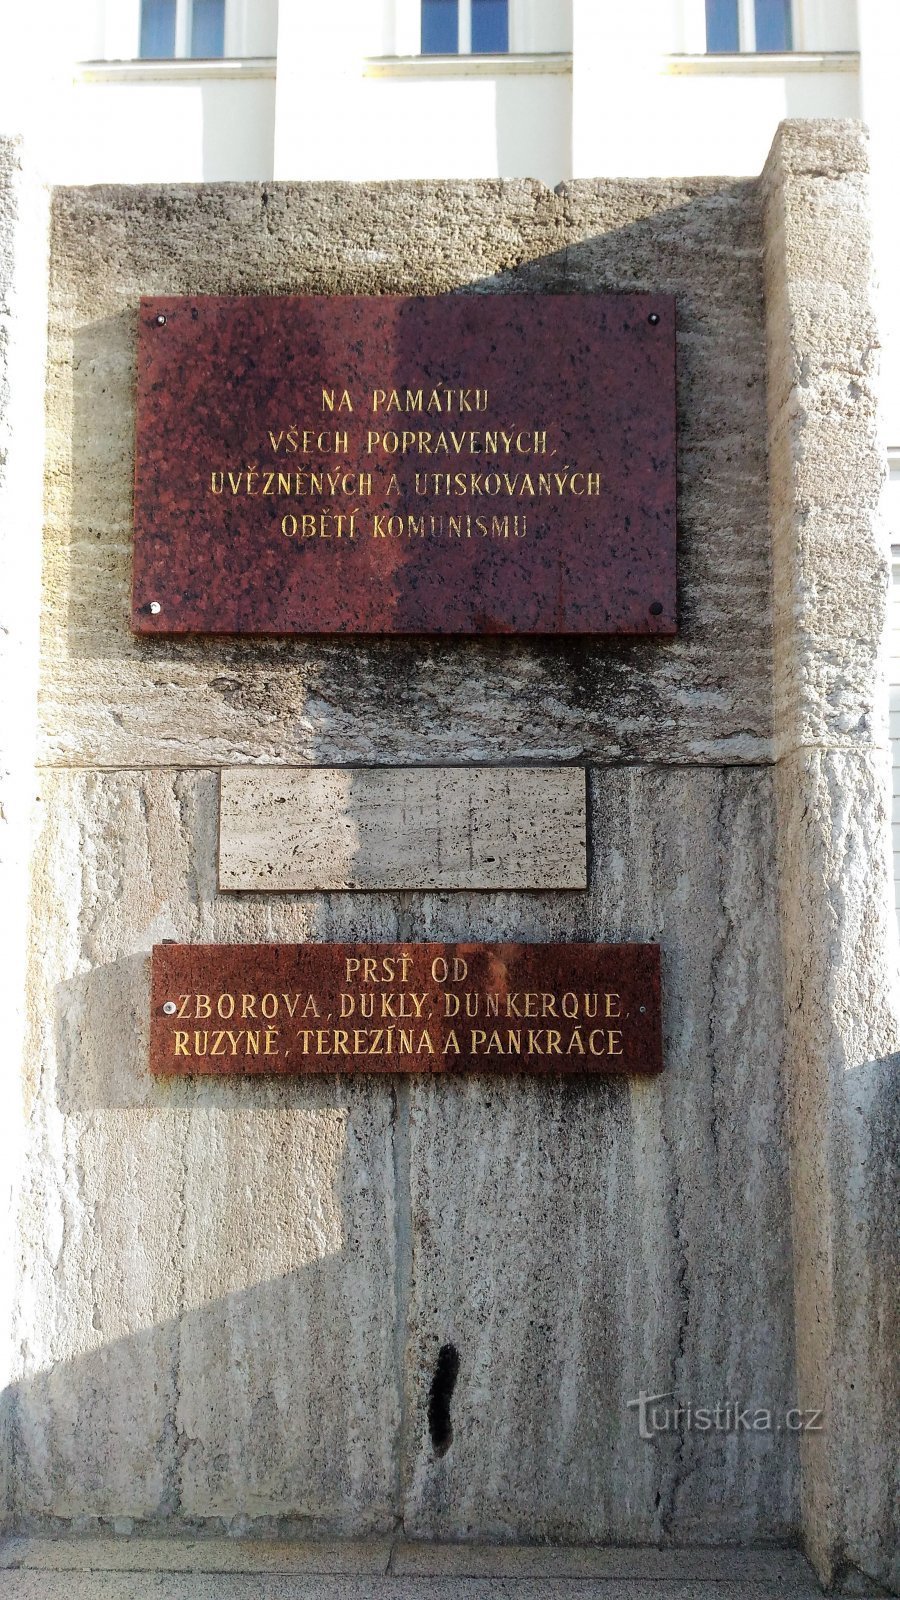 Памятник на лестнице перед зданием муниципалитета в Теплице